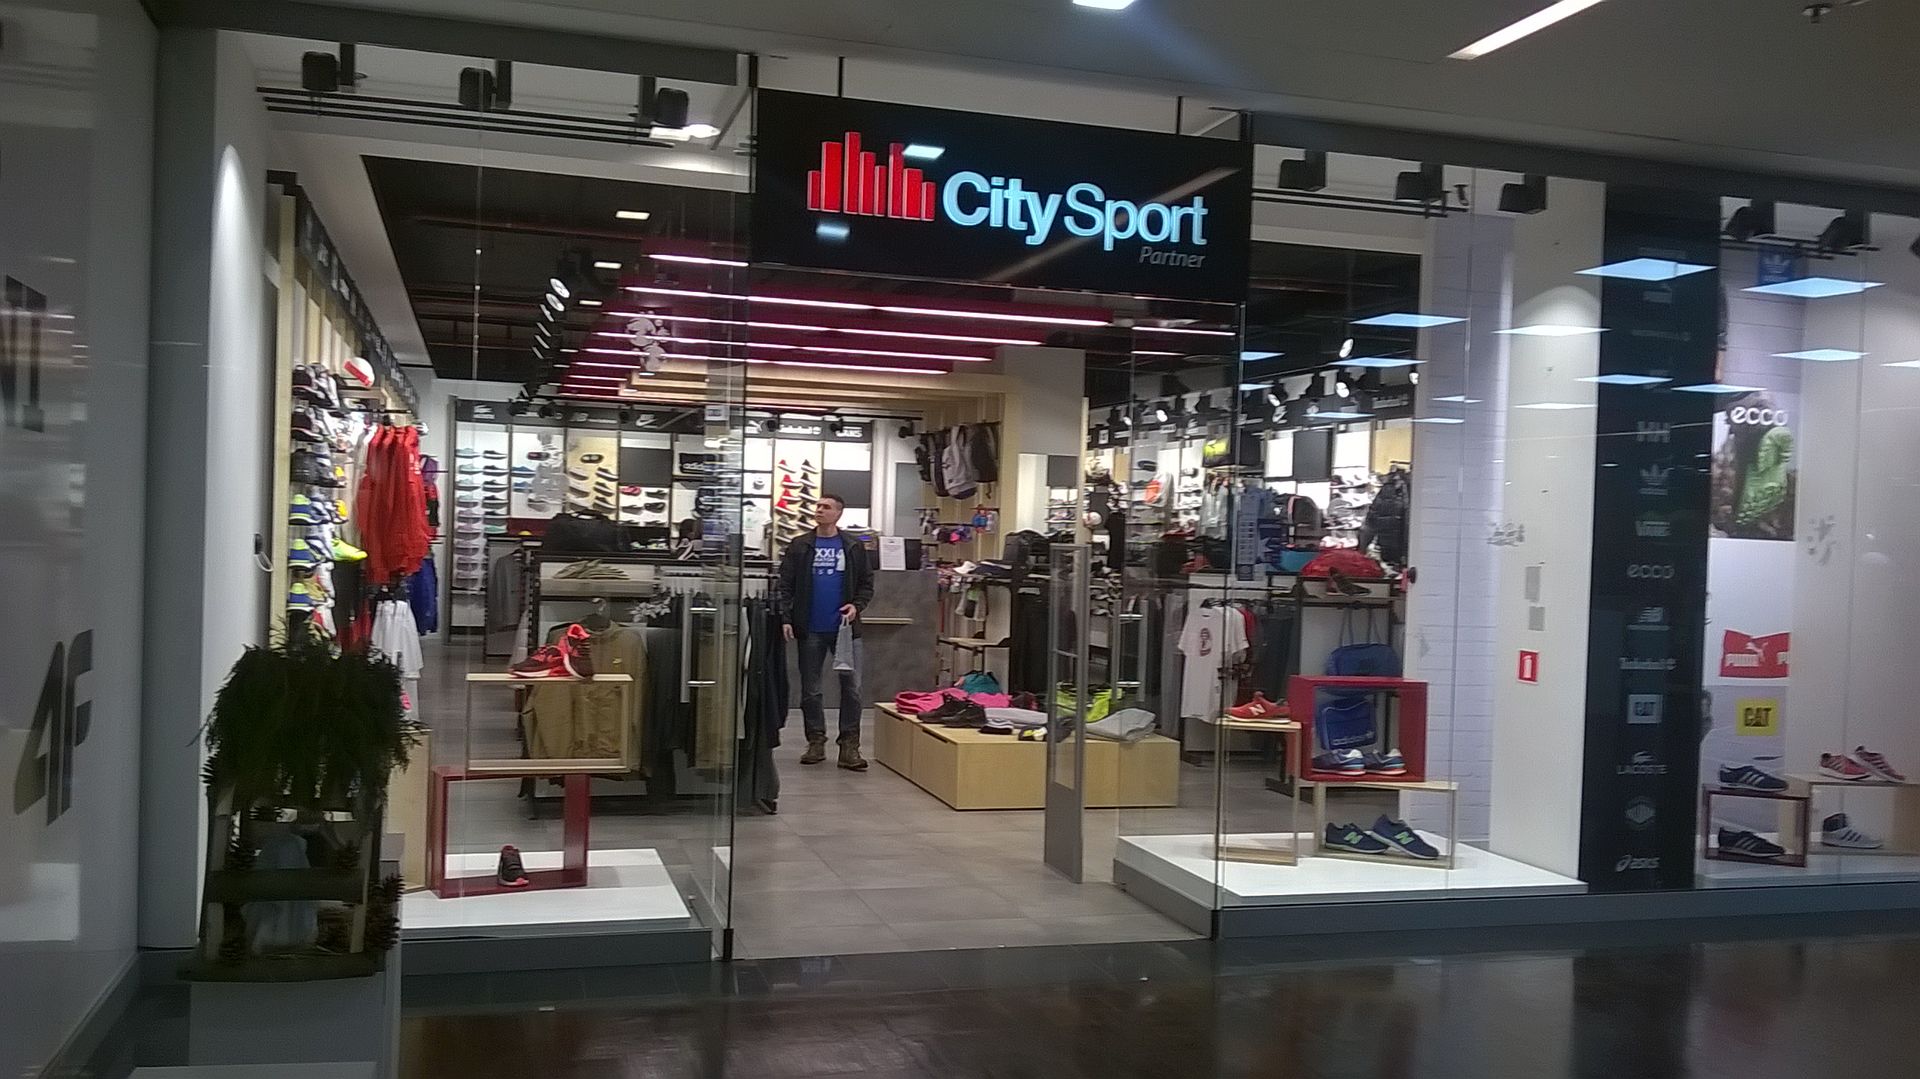  Pierwszy we Włocławku salon marki City Sport otworzył się we Wzorcowni Włocławek